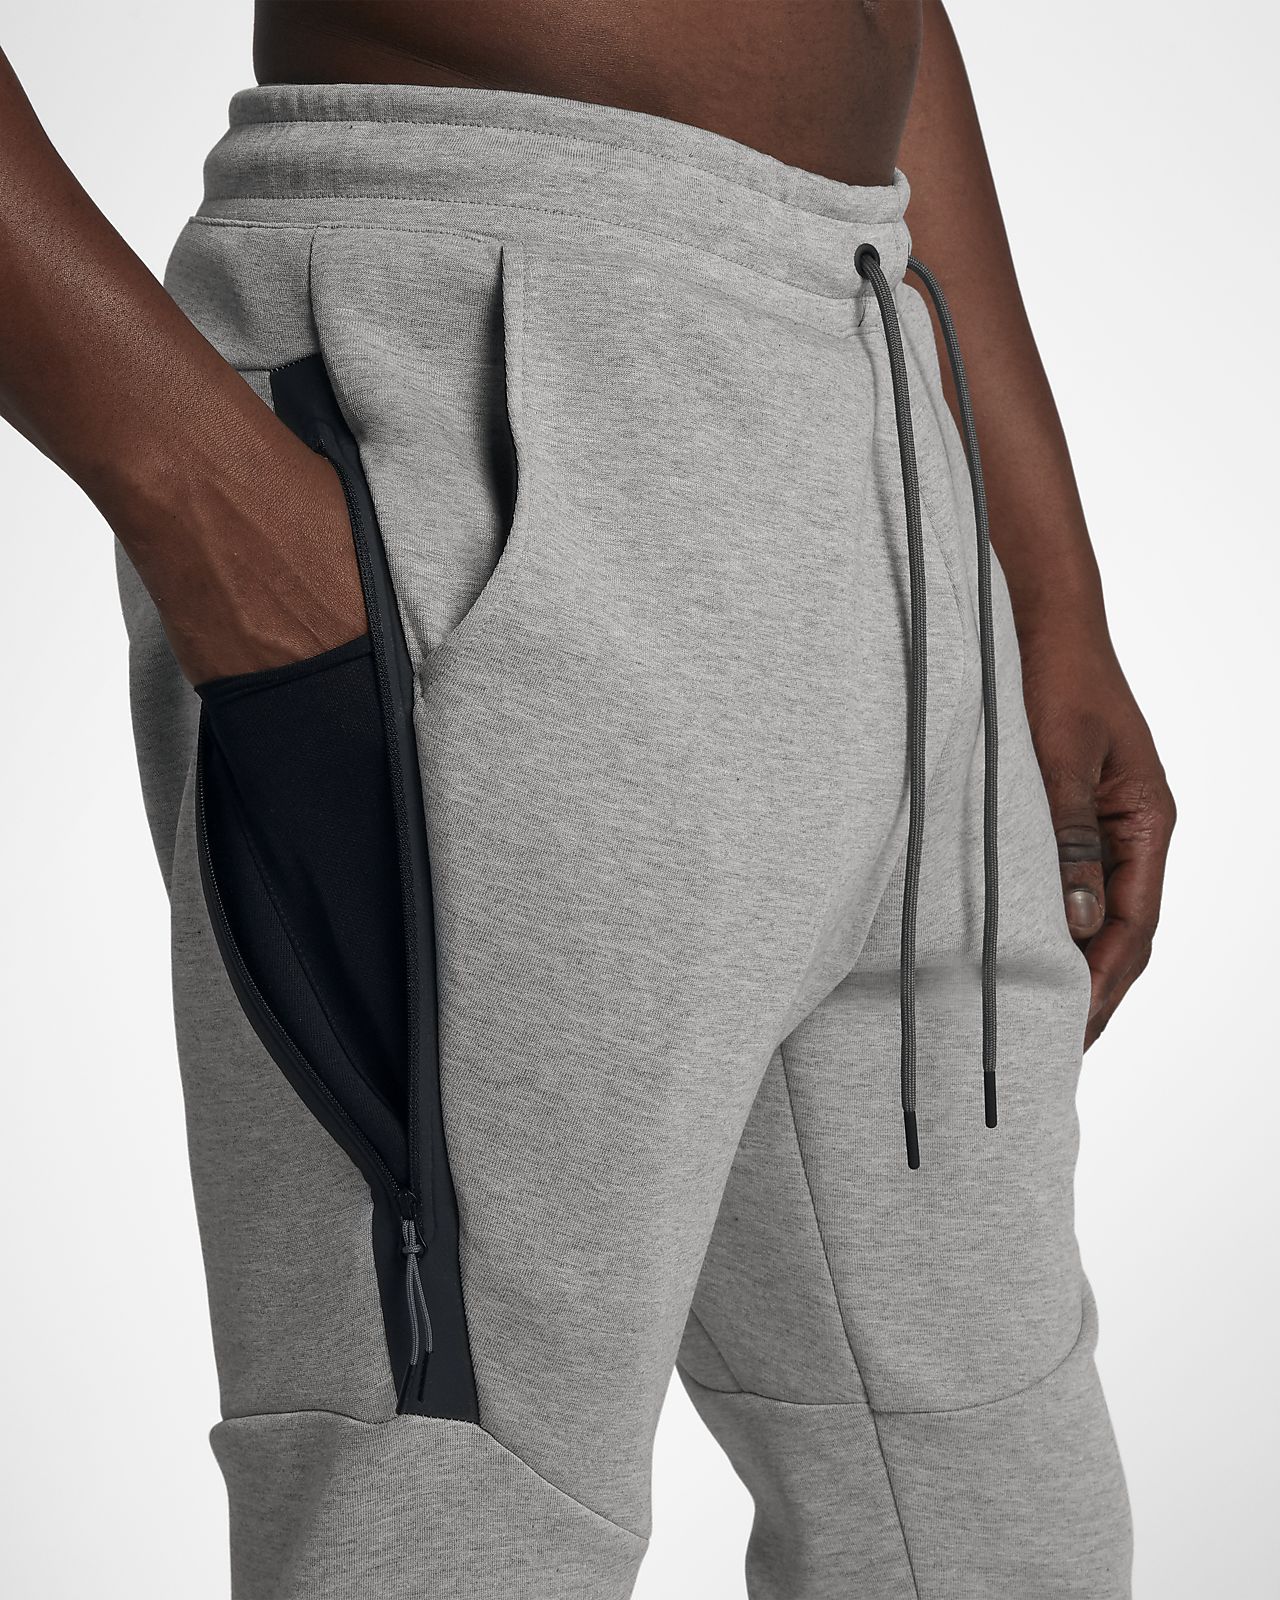 nike men's sweatpants with back pocket